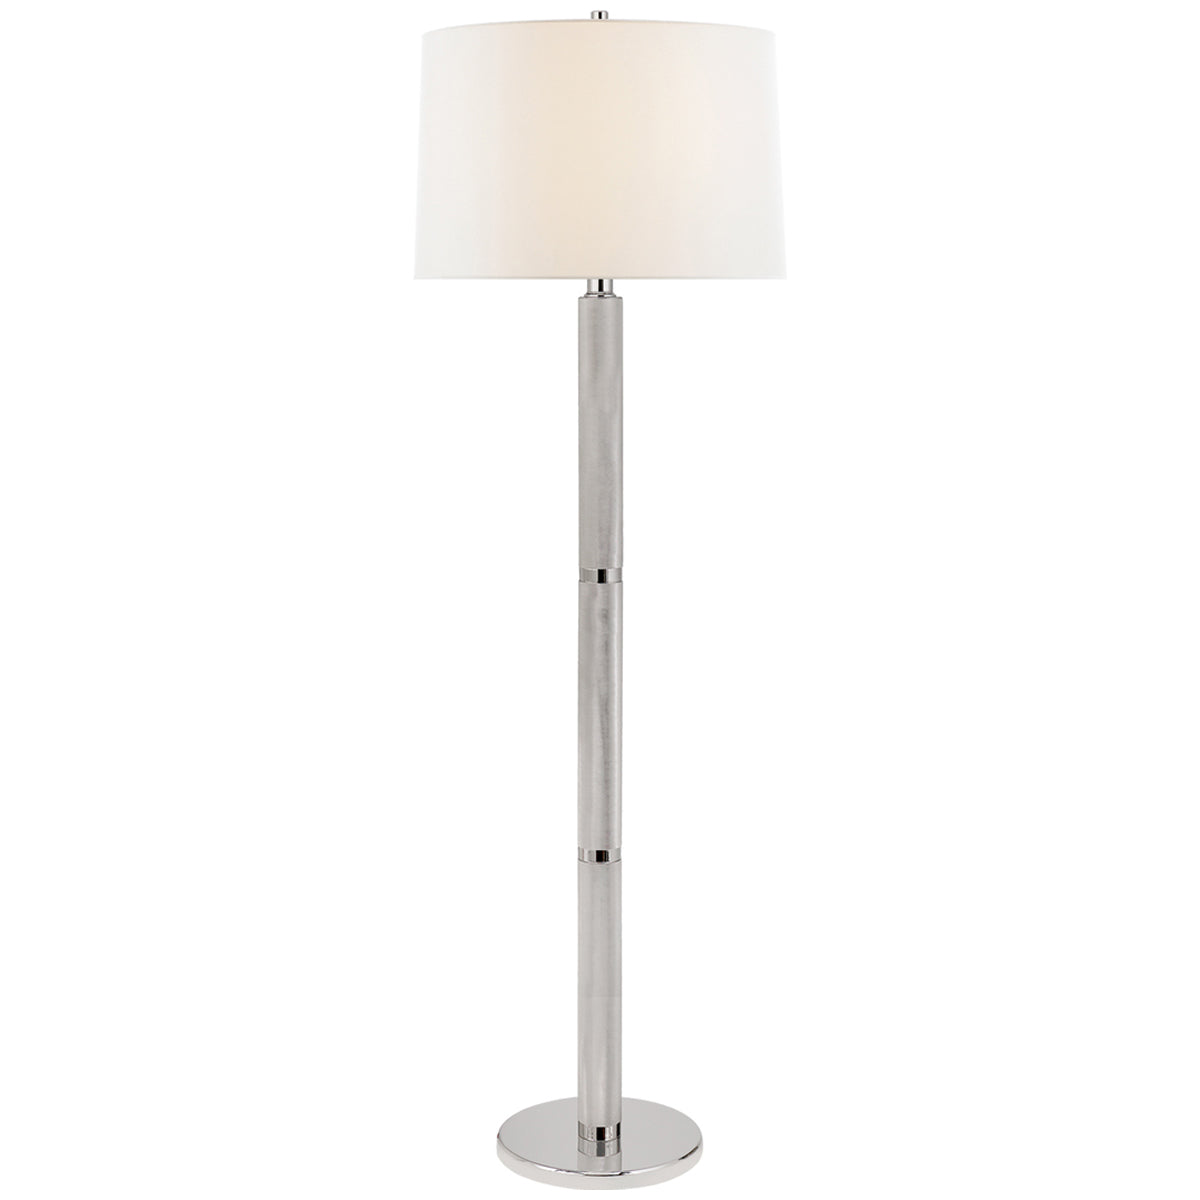 Visual Comfort Barrett Large Knurled Floor Lamp